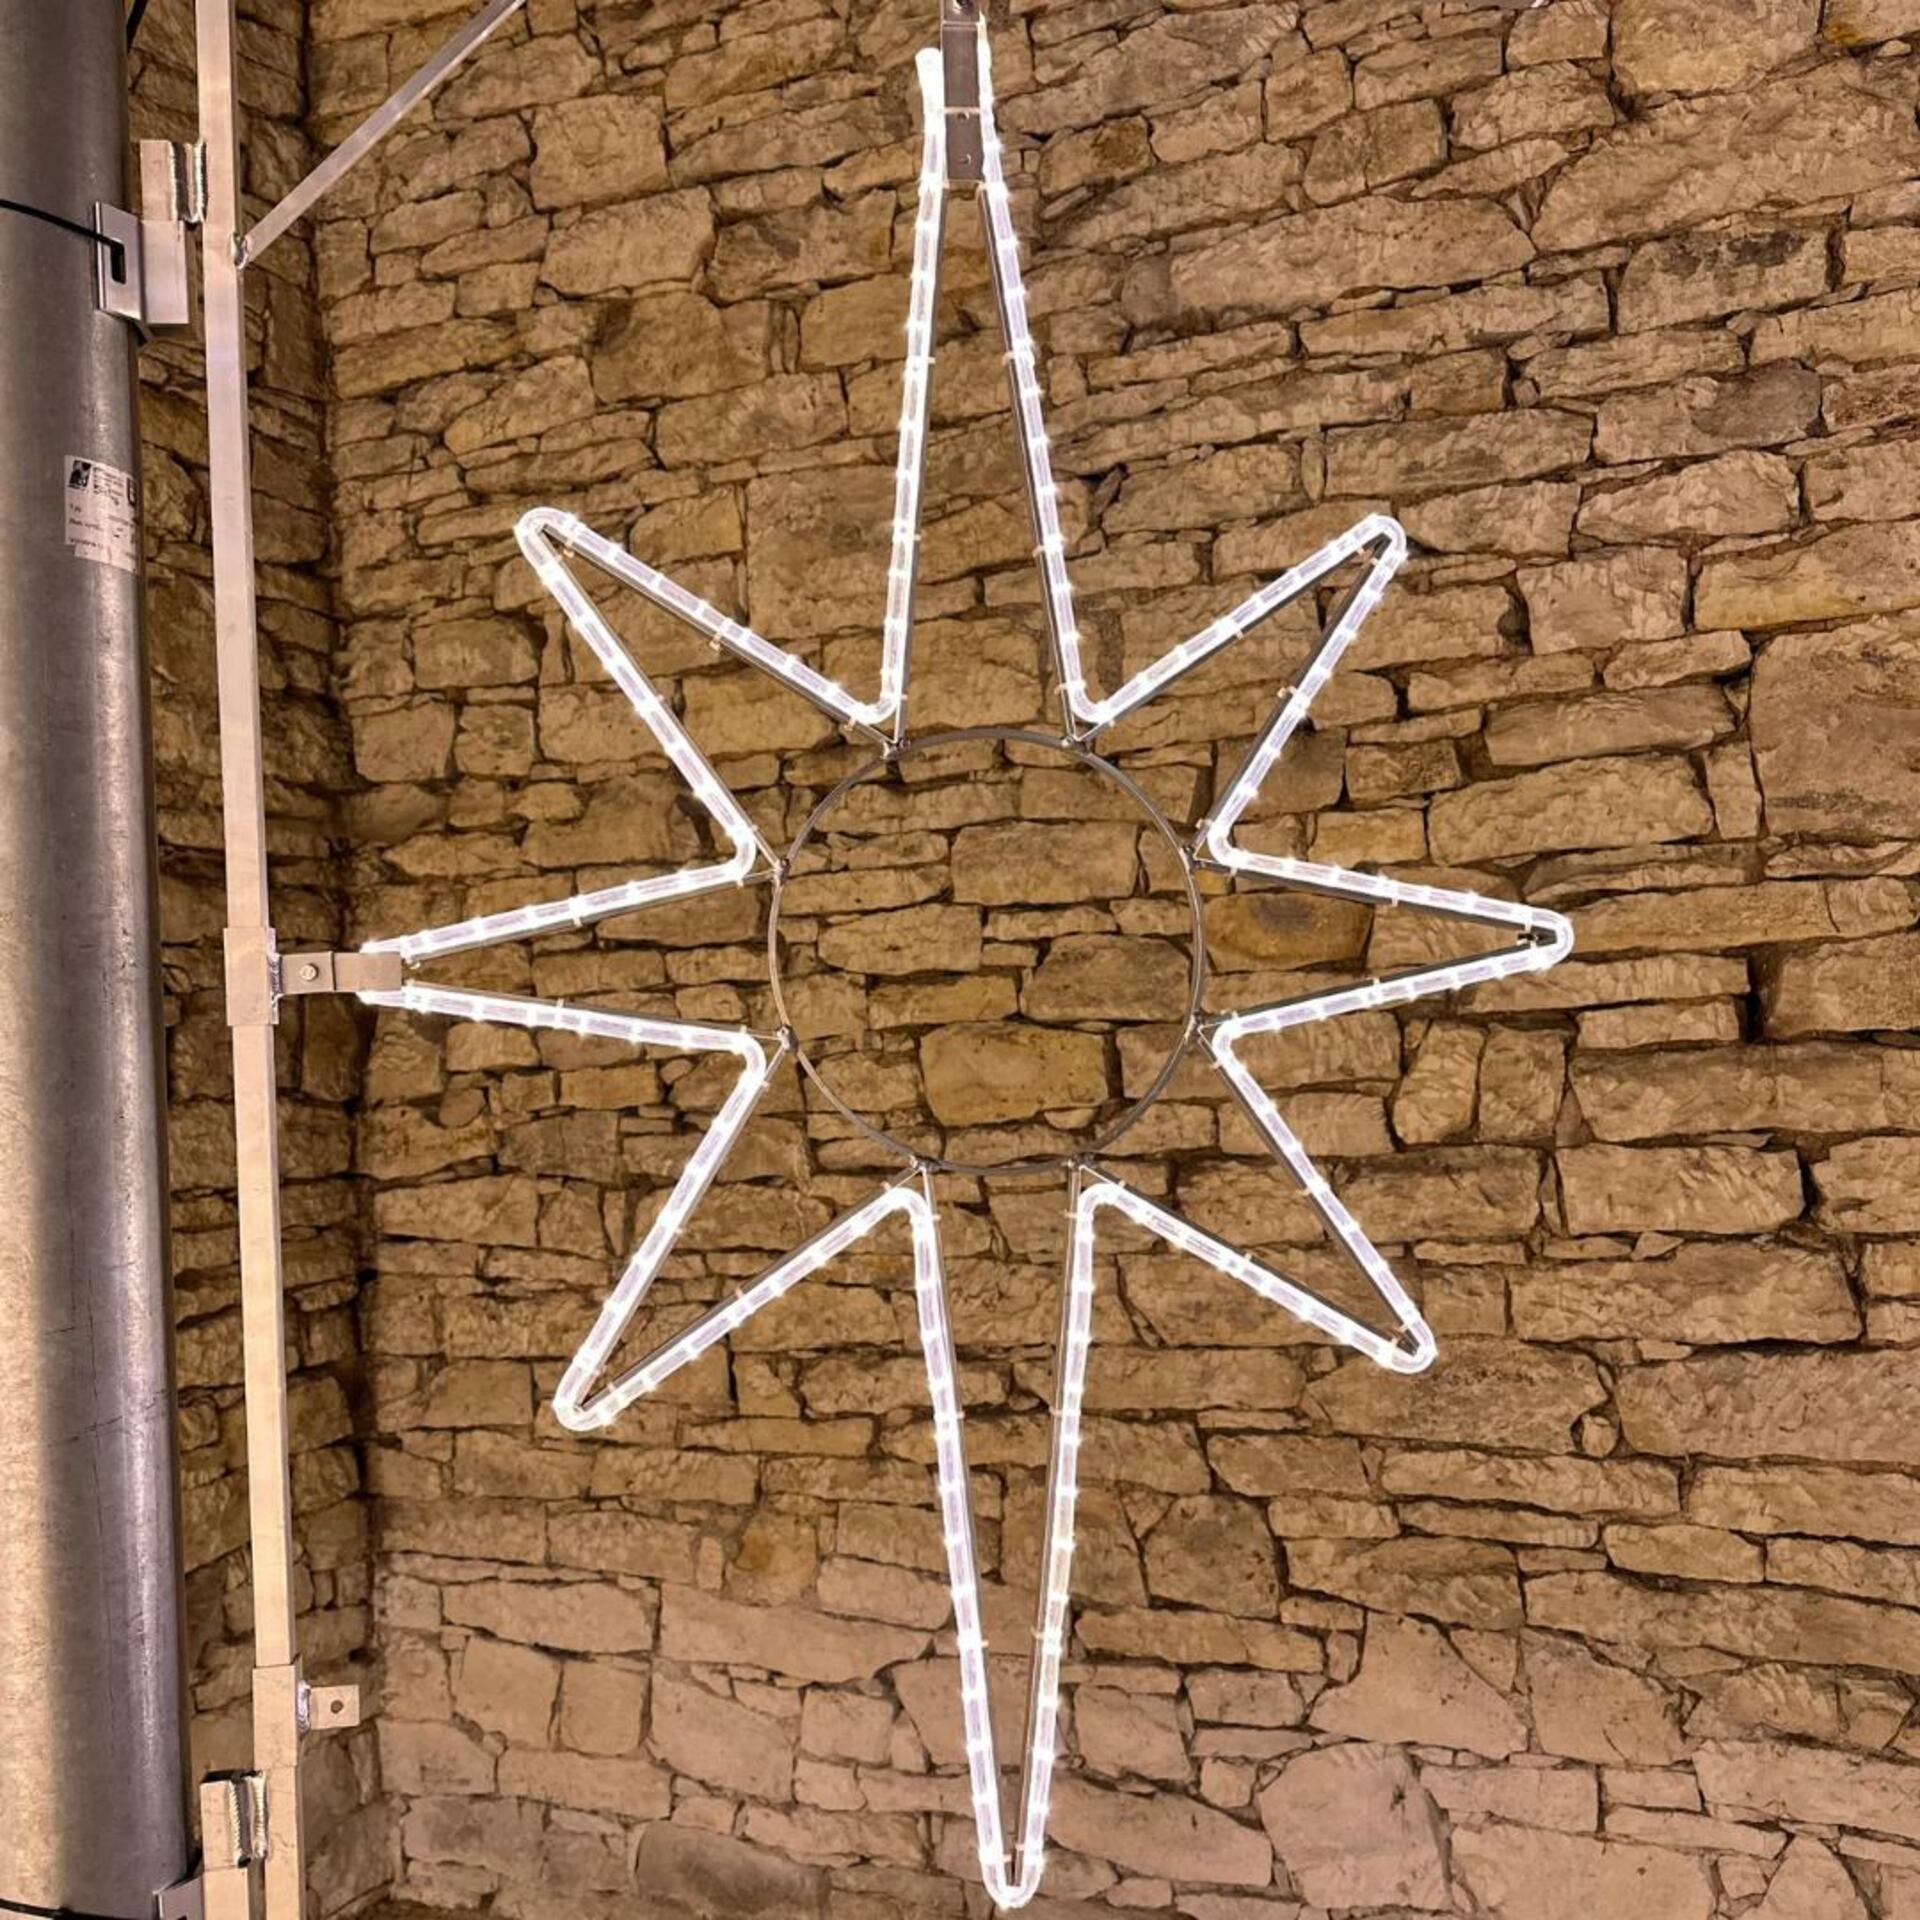 DecoLED LED světelná hvězda na VO, 60x90 cm, teple bílá